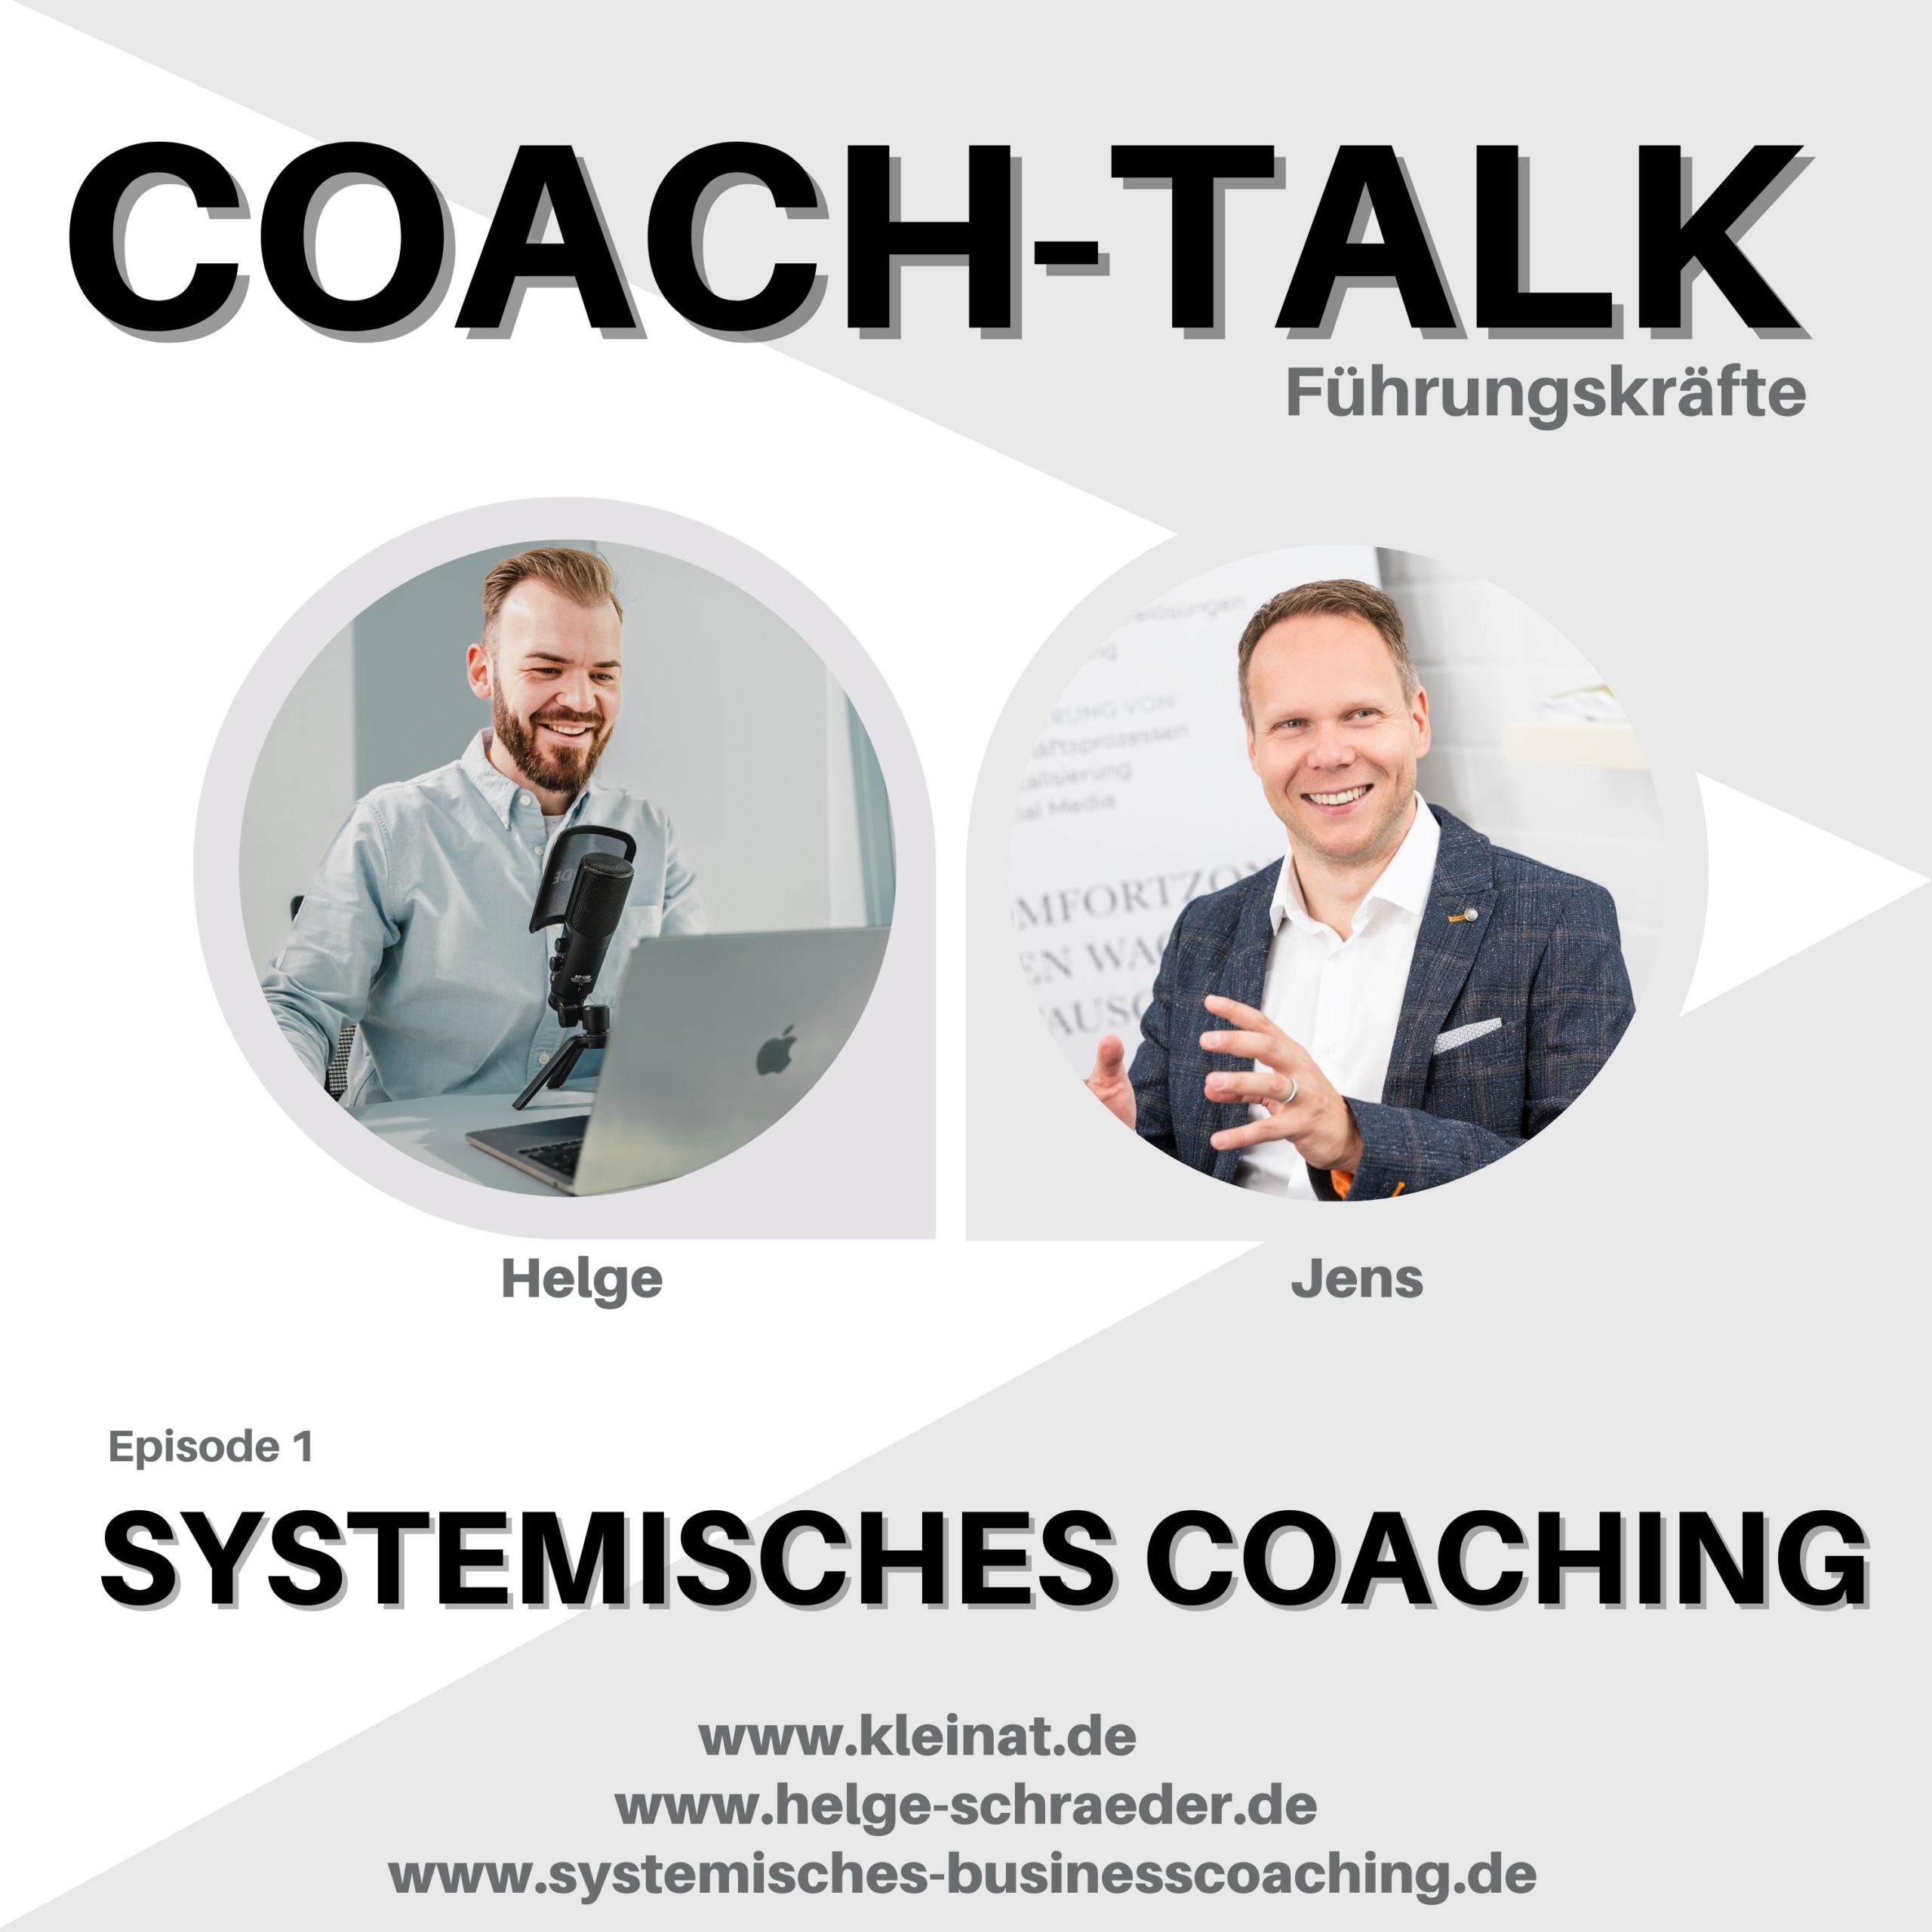 Podcast Coaching und Führungskräfte